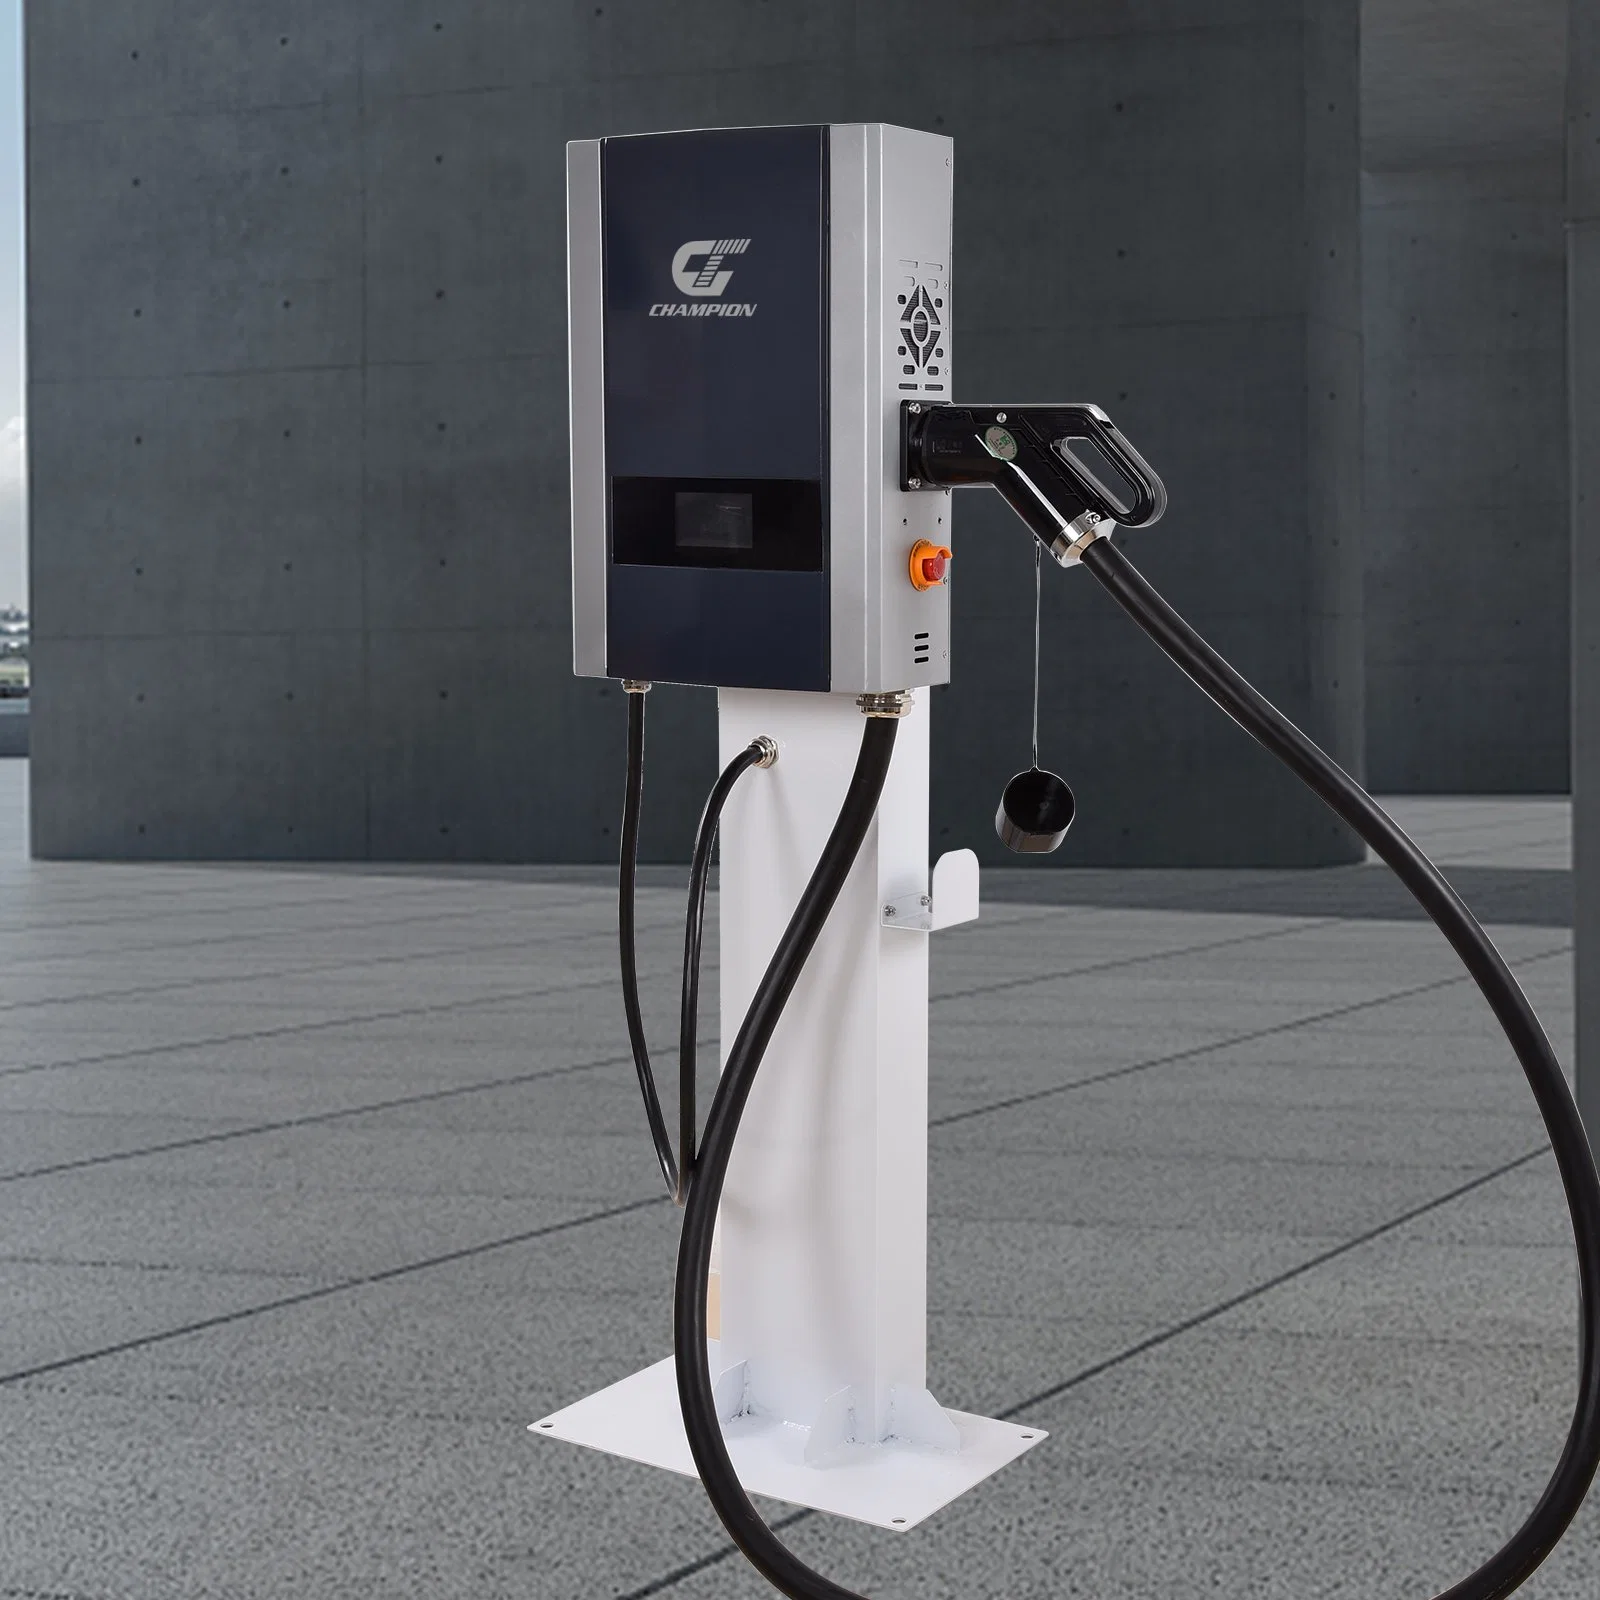 Nouvelle tendance Station de recharge pour véhicules électriques Pile de recharge pour véhicules électriques montée au mur Chargeur de véhicule électrique standard européen 20 kW 30 kW.